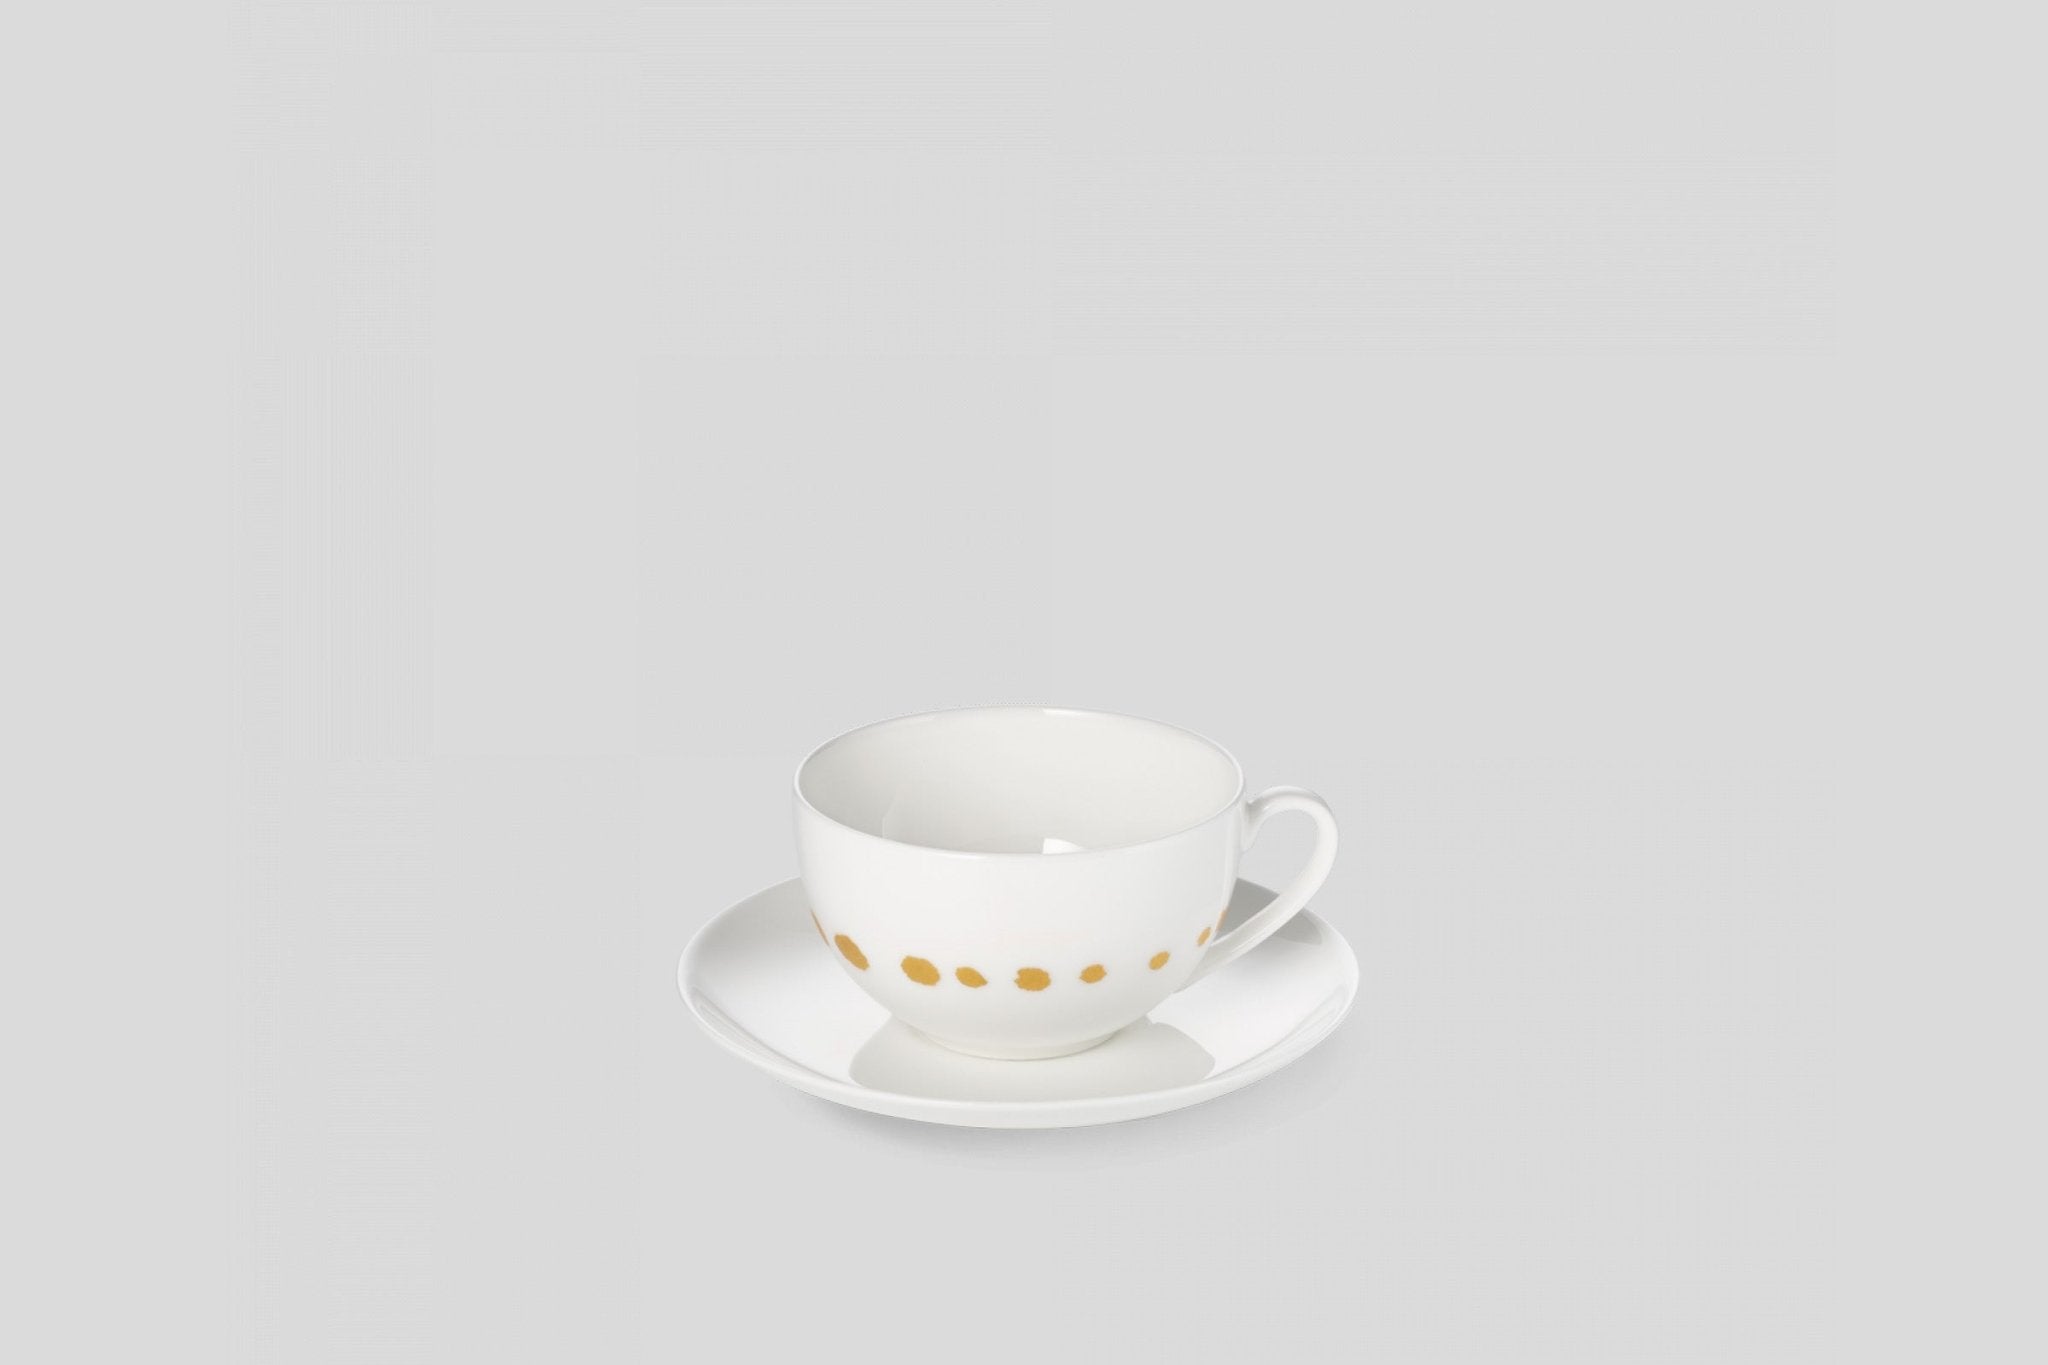 Designer-Luxury-Modern-Dibbern Golden Pearls Espresso Cup & Saucer-Dibbern-White-Golden Pearls-Bodo Sperlein-Bone China-Designer-Luxury-Modern-Tasse-Becher-Kaffee Tasse